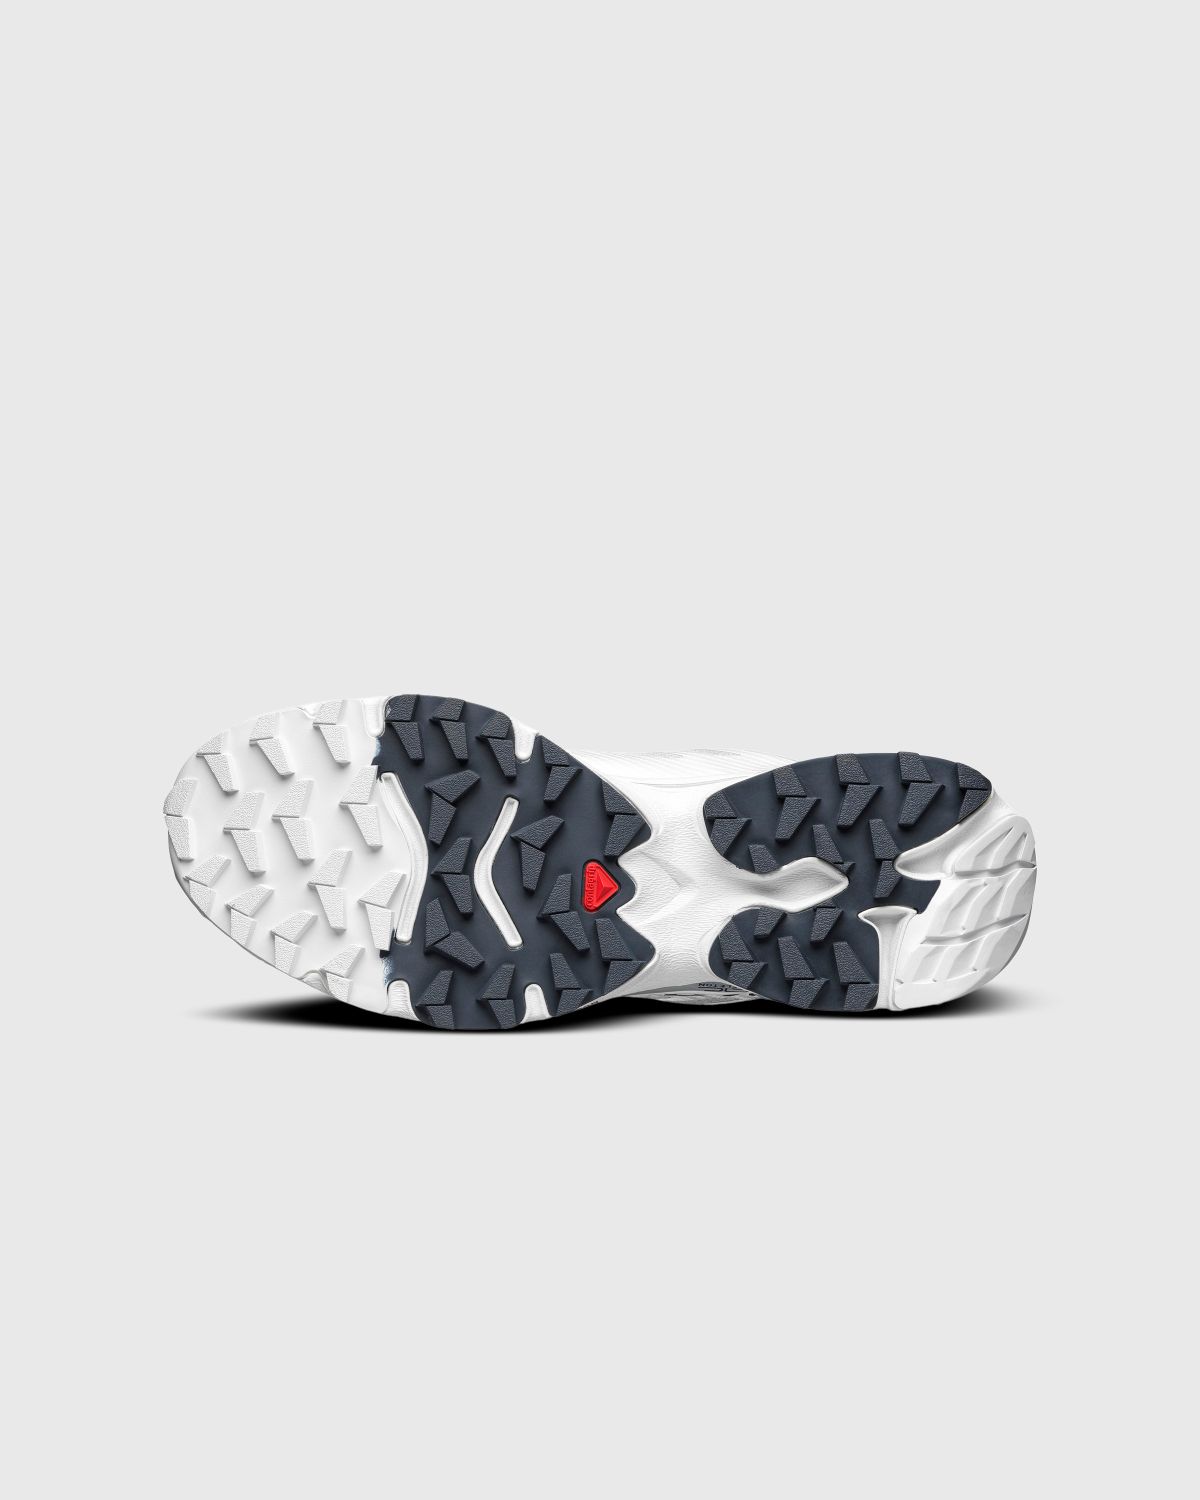 Salomon – XT-4 OG White/Ebony/Lunar Rock - Sneakers - White - Image 2